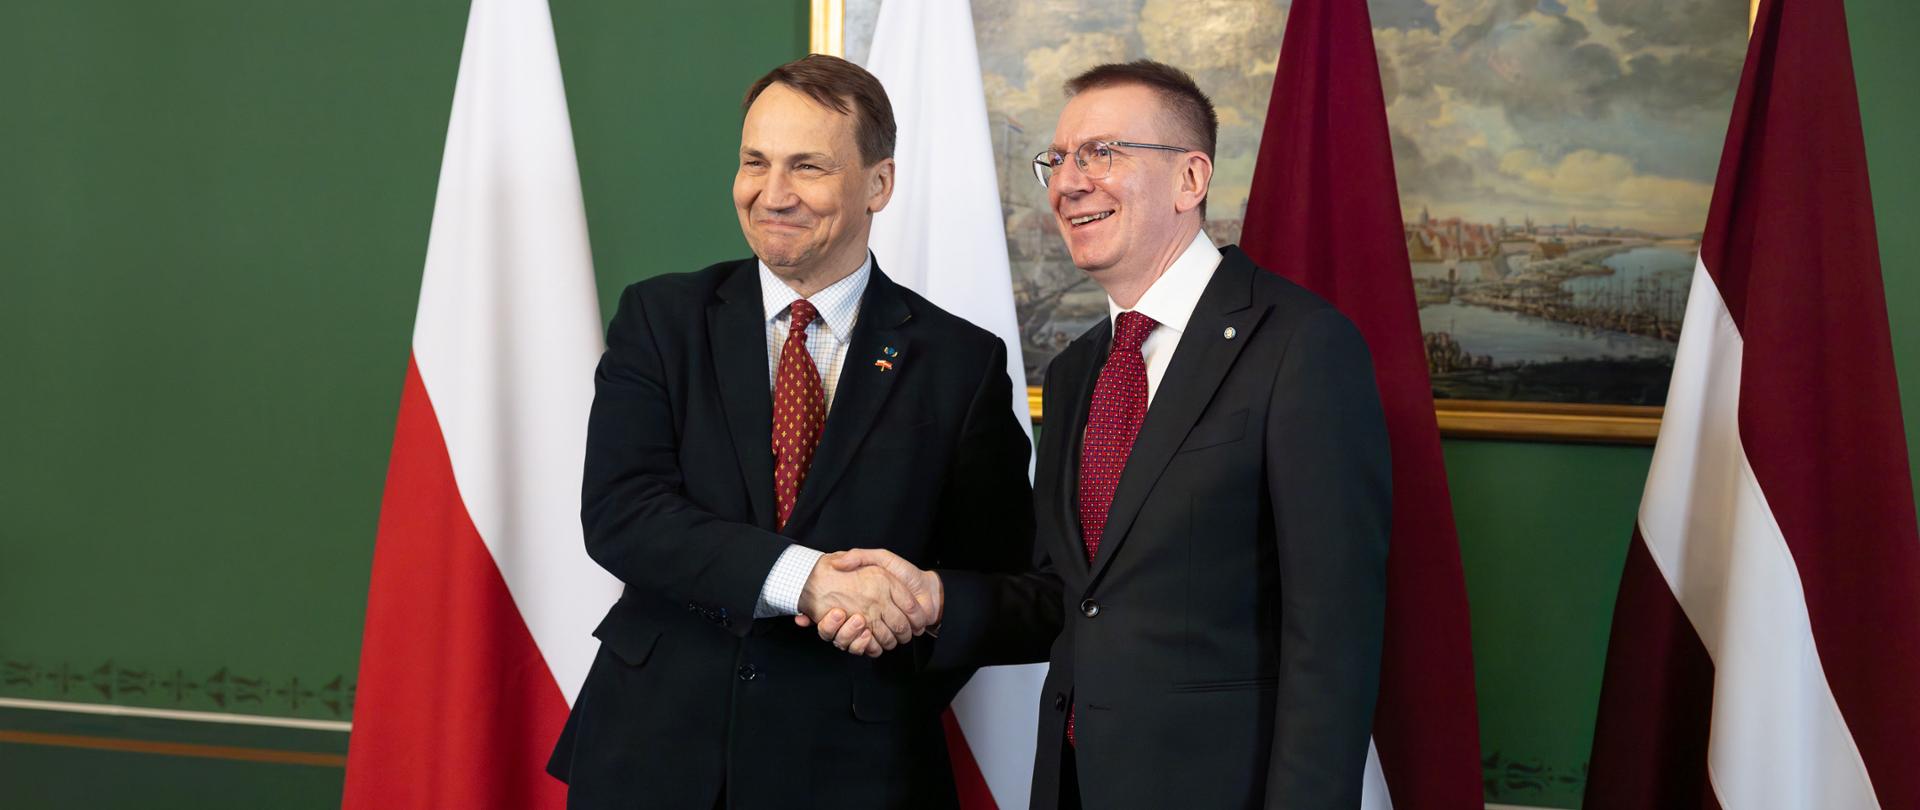 Minister Radosław Sikorski with the President of Latvia Edgars Rinkēvičs